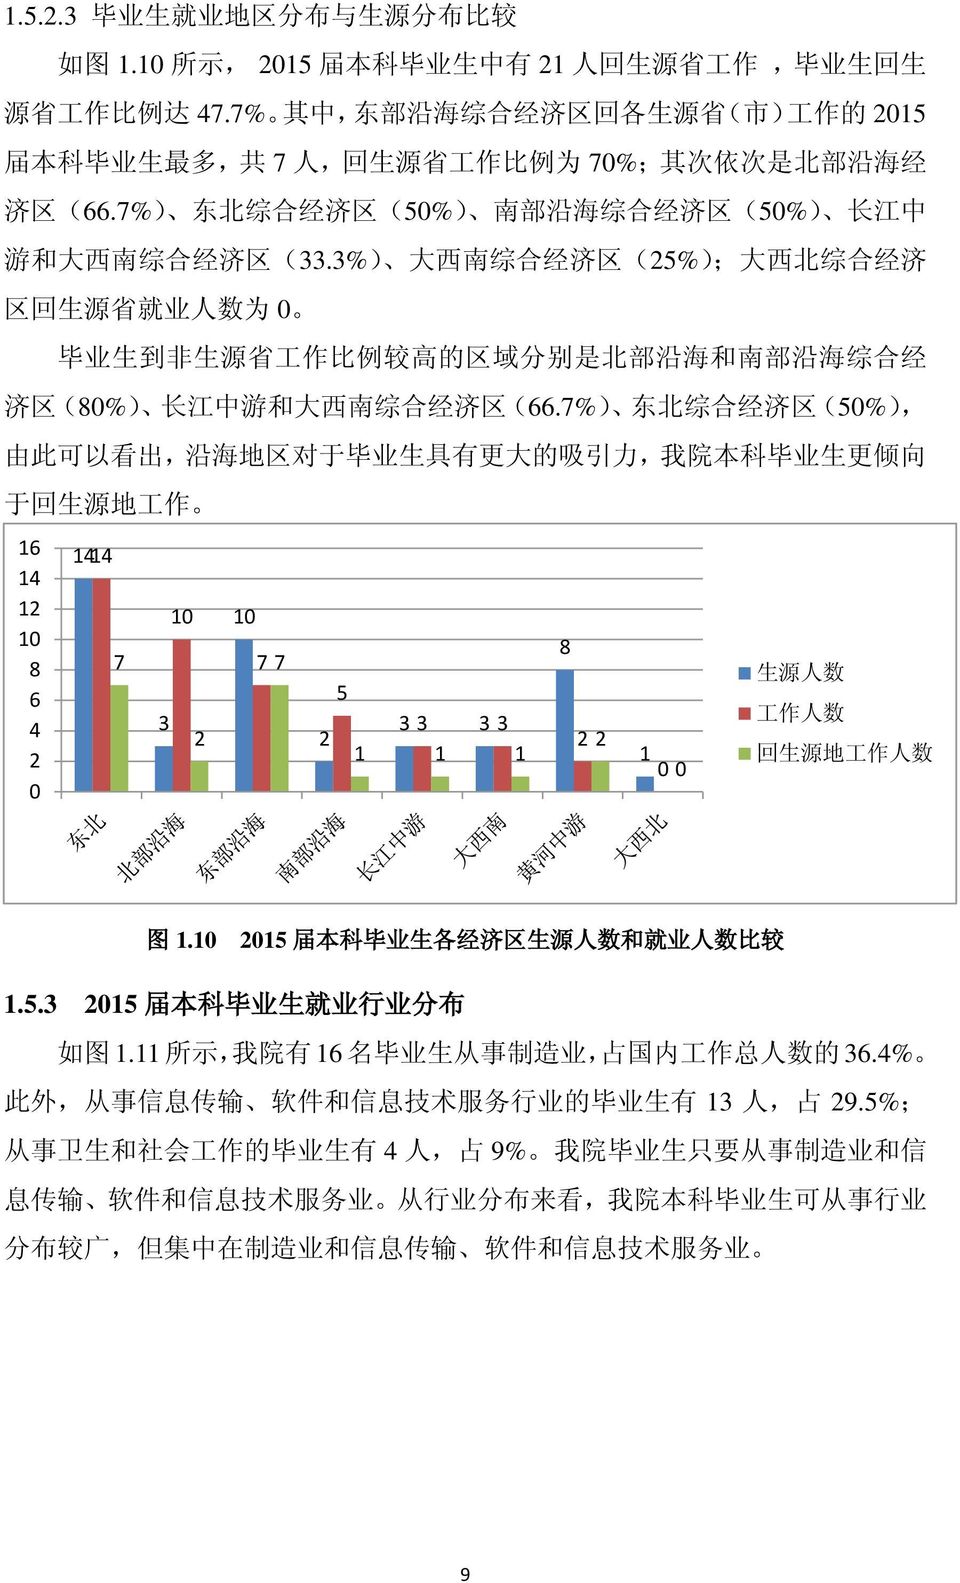 7%) 东 北 综 合 经 济 区 (50%) 南 部 沿 海 综 合 经 济 区 (50%) 长 江 中 游 和 大 西 南 综 合 经 济 区 (33.